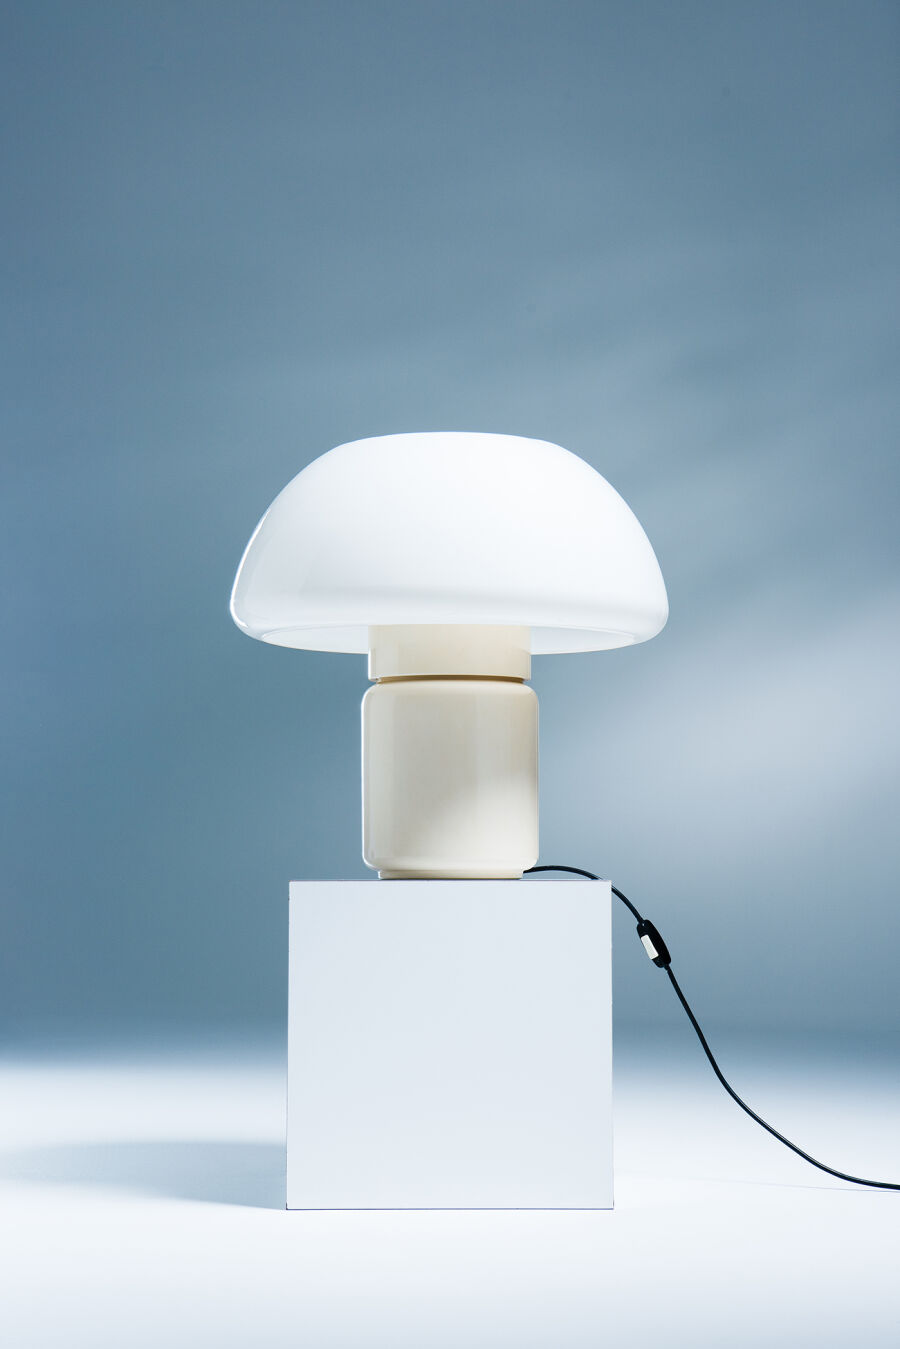 mushroom-lamp1